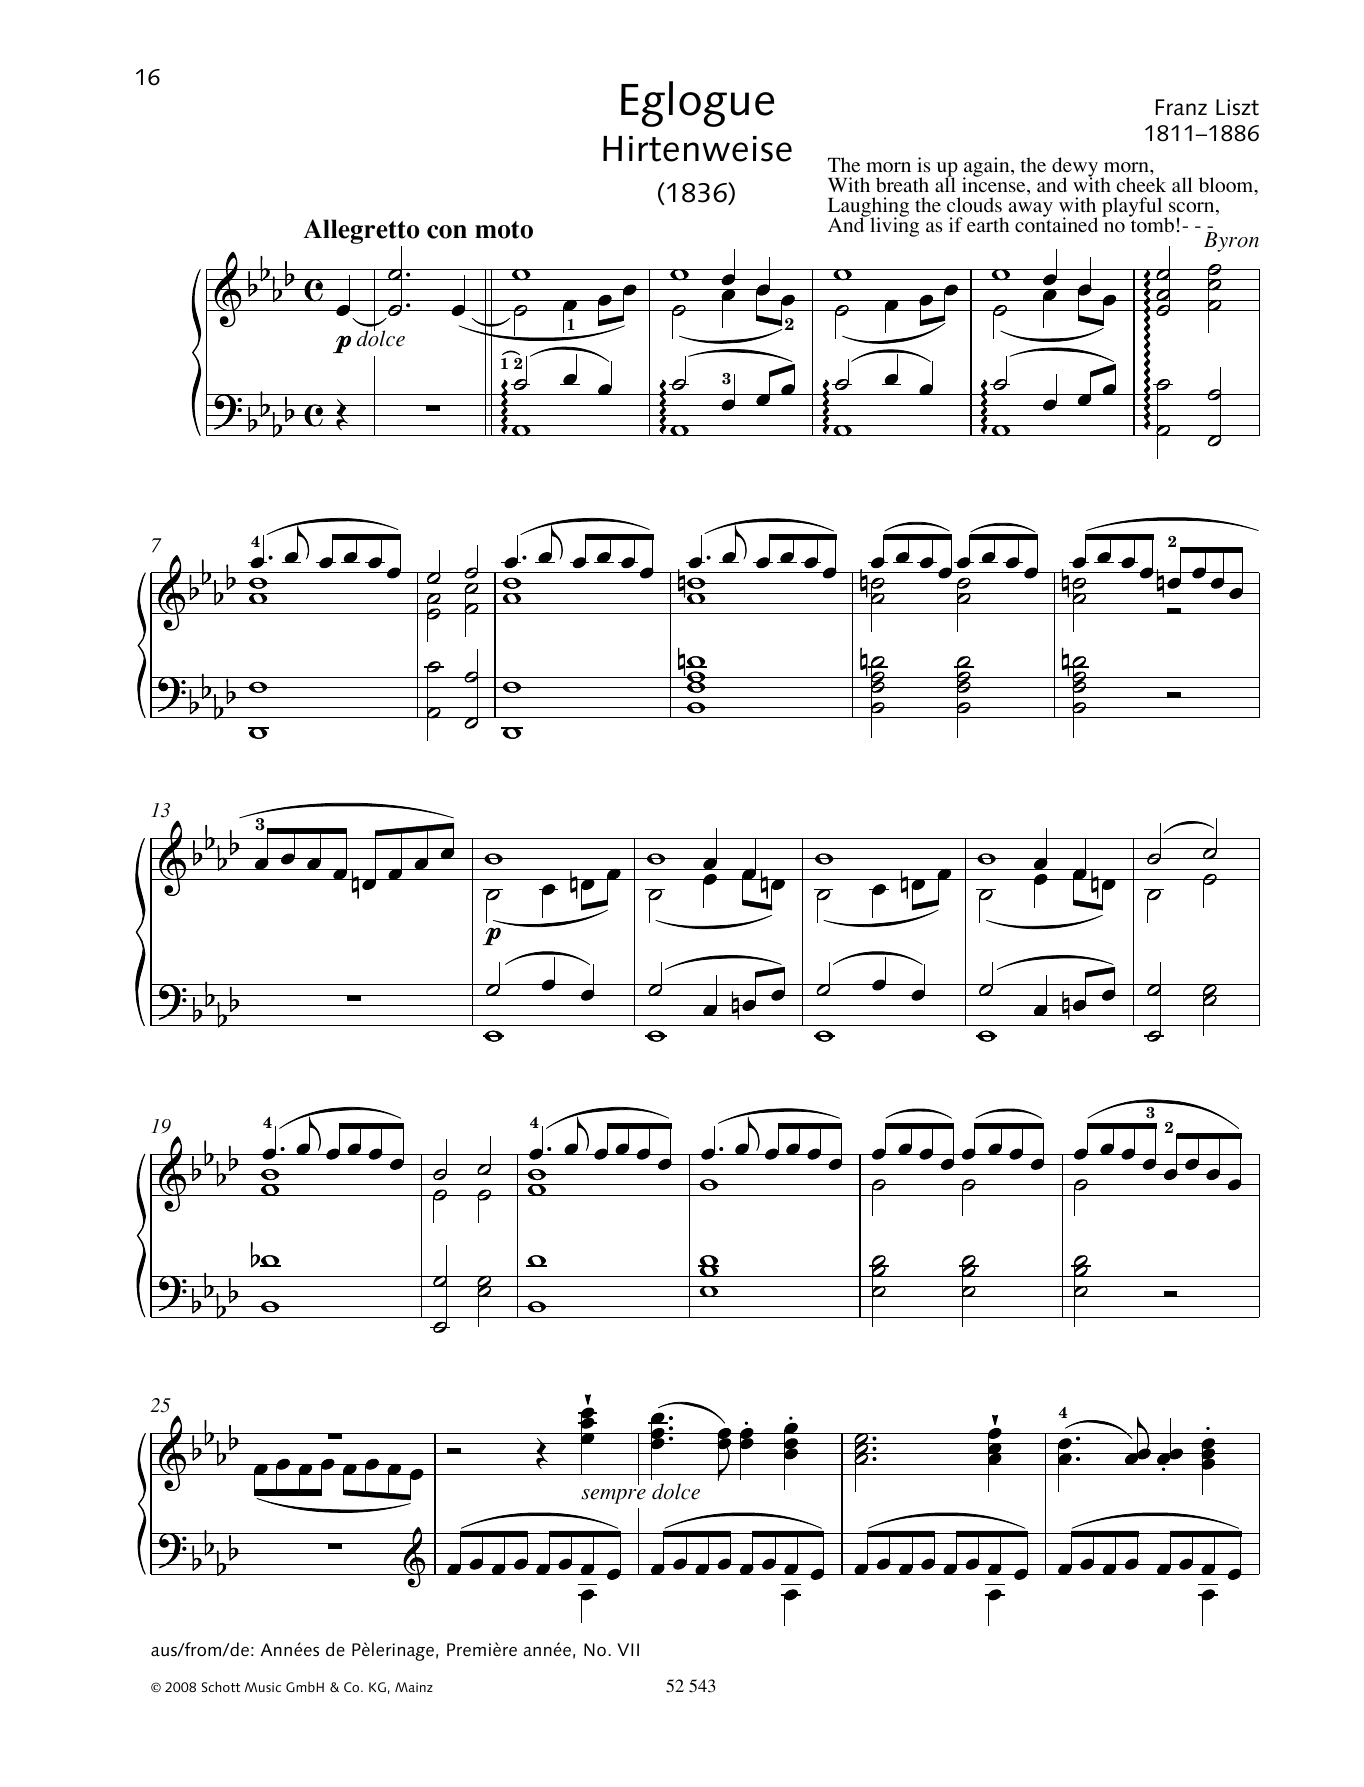 Download Franz Liszt Eglogue (Hirtenweise) Sheet Music